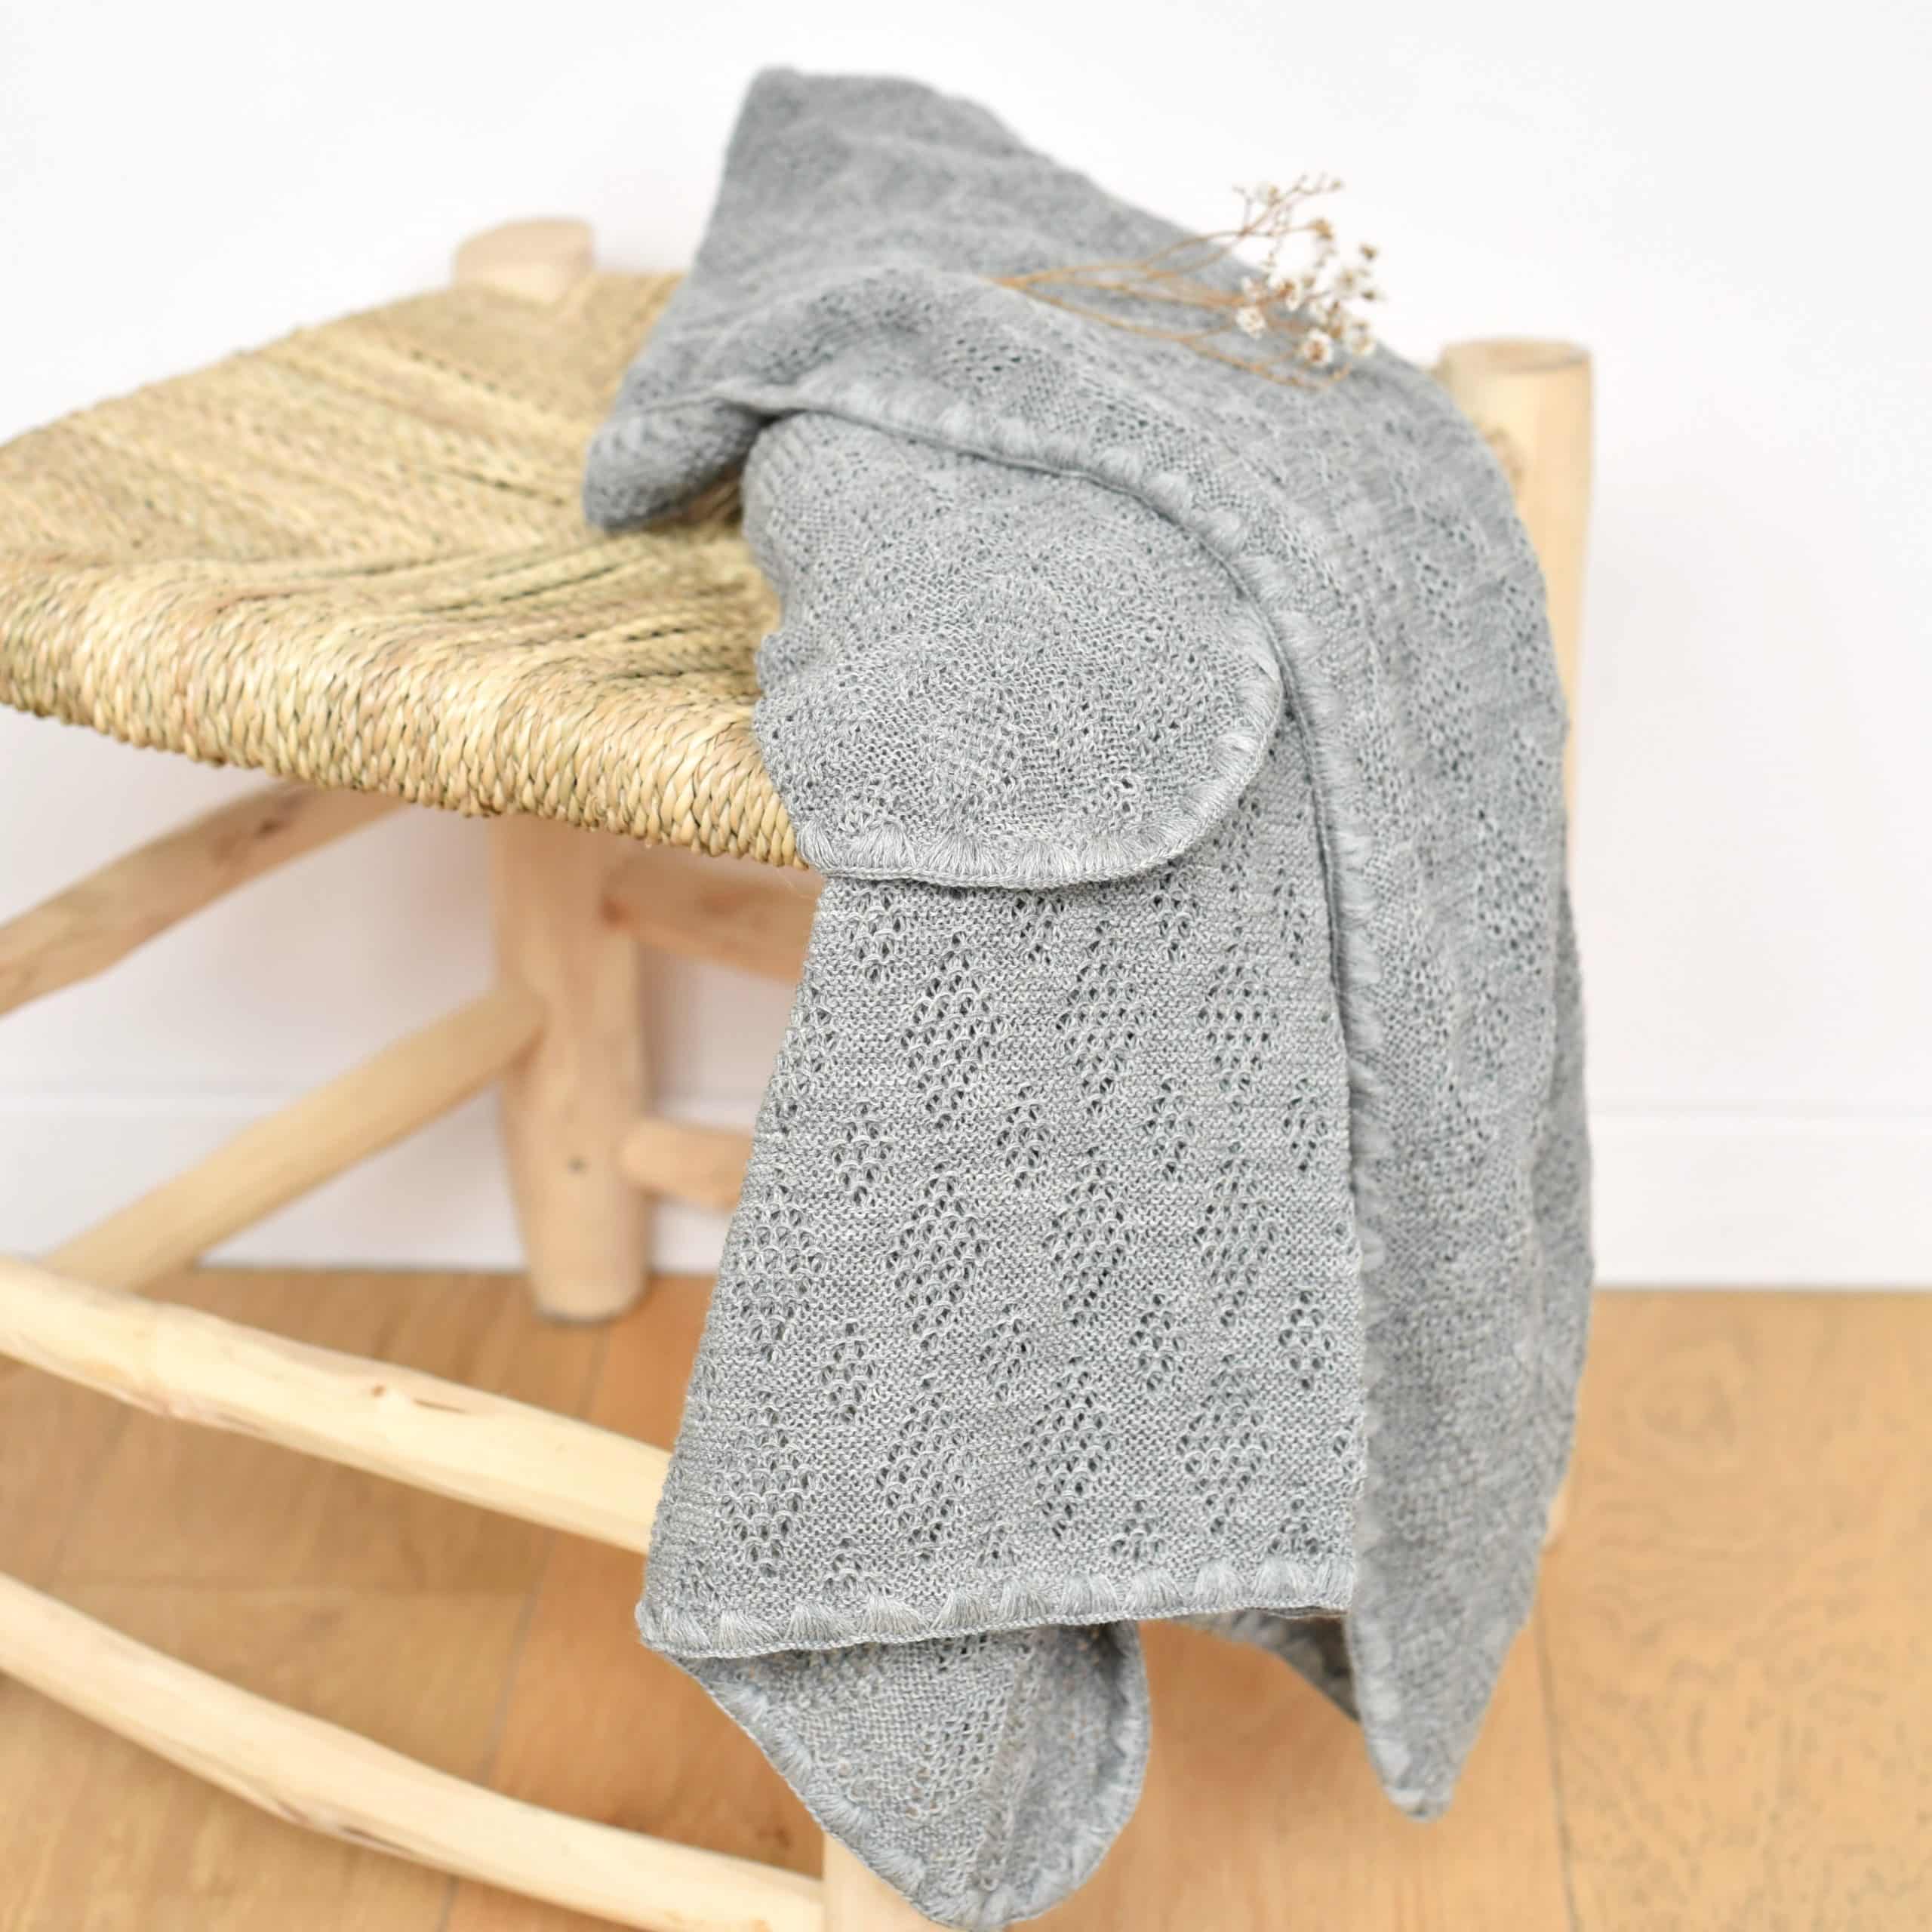 Couverture cellulaire pour bébé en dentelle tricotée en laine mérinos douce  grise, couverture bébé neutre pour lété -  France